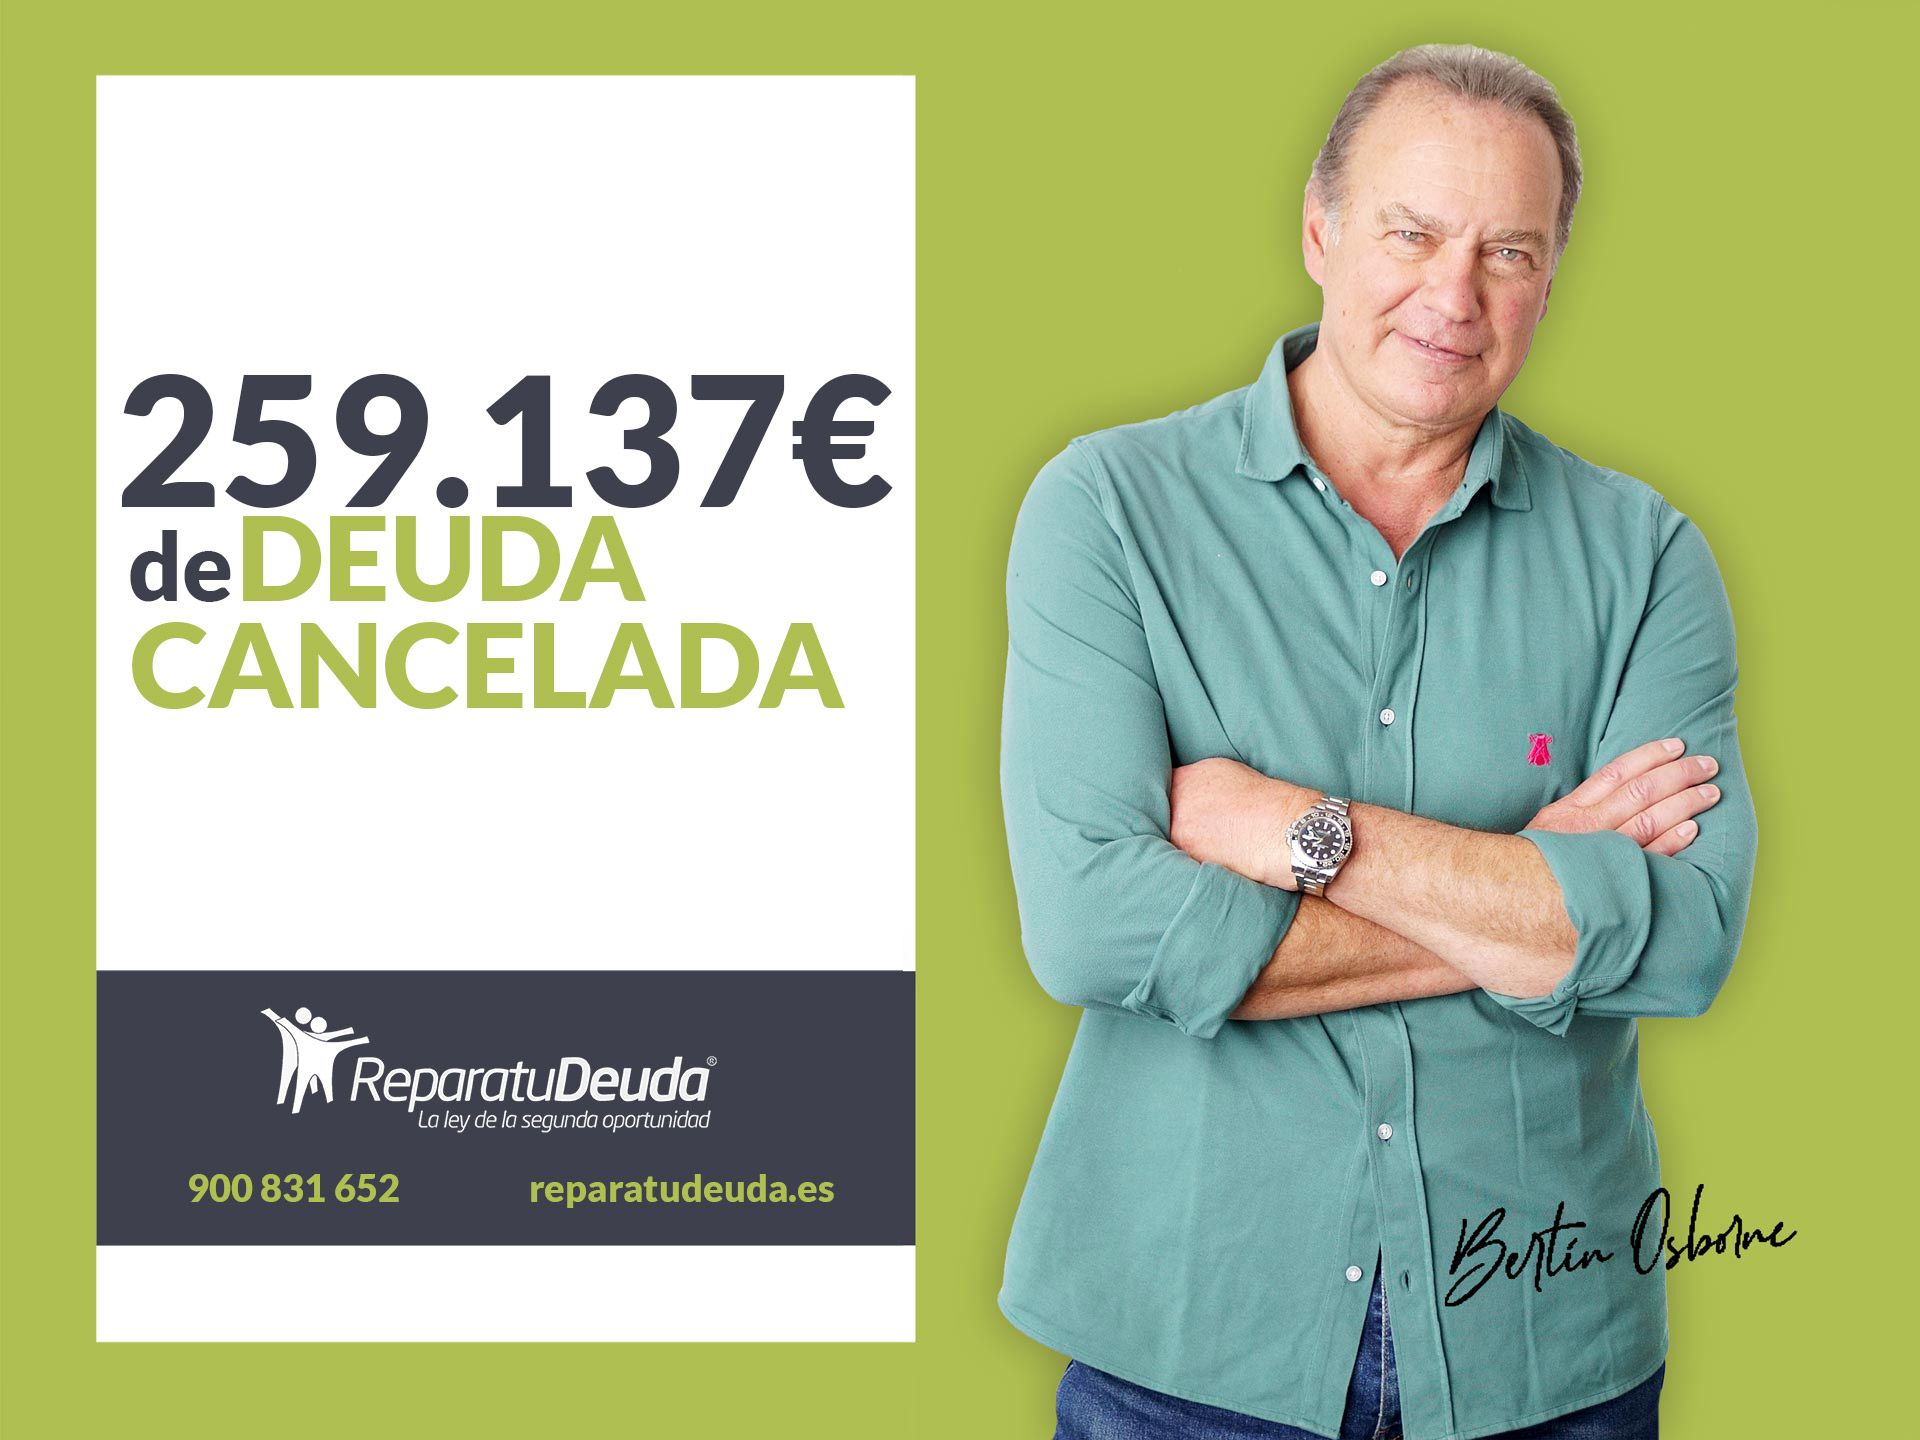 Repara tu Deuda Abogados cancela 259.137 ? en Granollers (Barcelona) con la Ley de Segunda Oportunidad